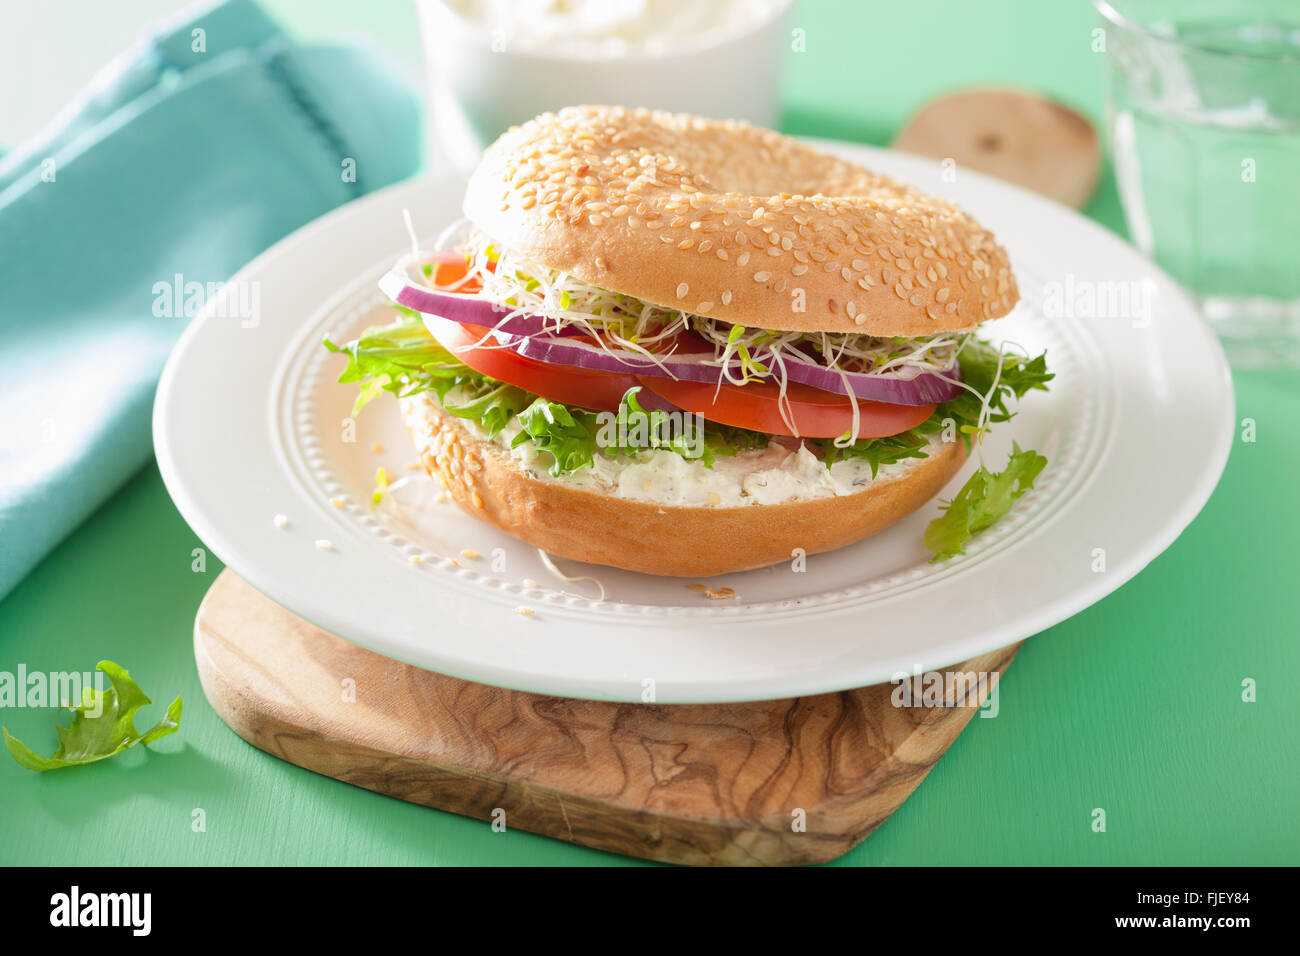 Le sandwich tomate bagel avec fromage à la crème de laitue oignon luzerne Banque D'Images